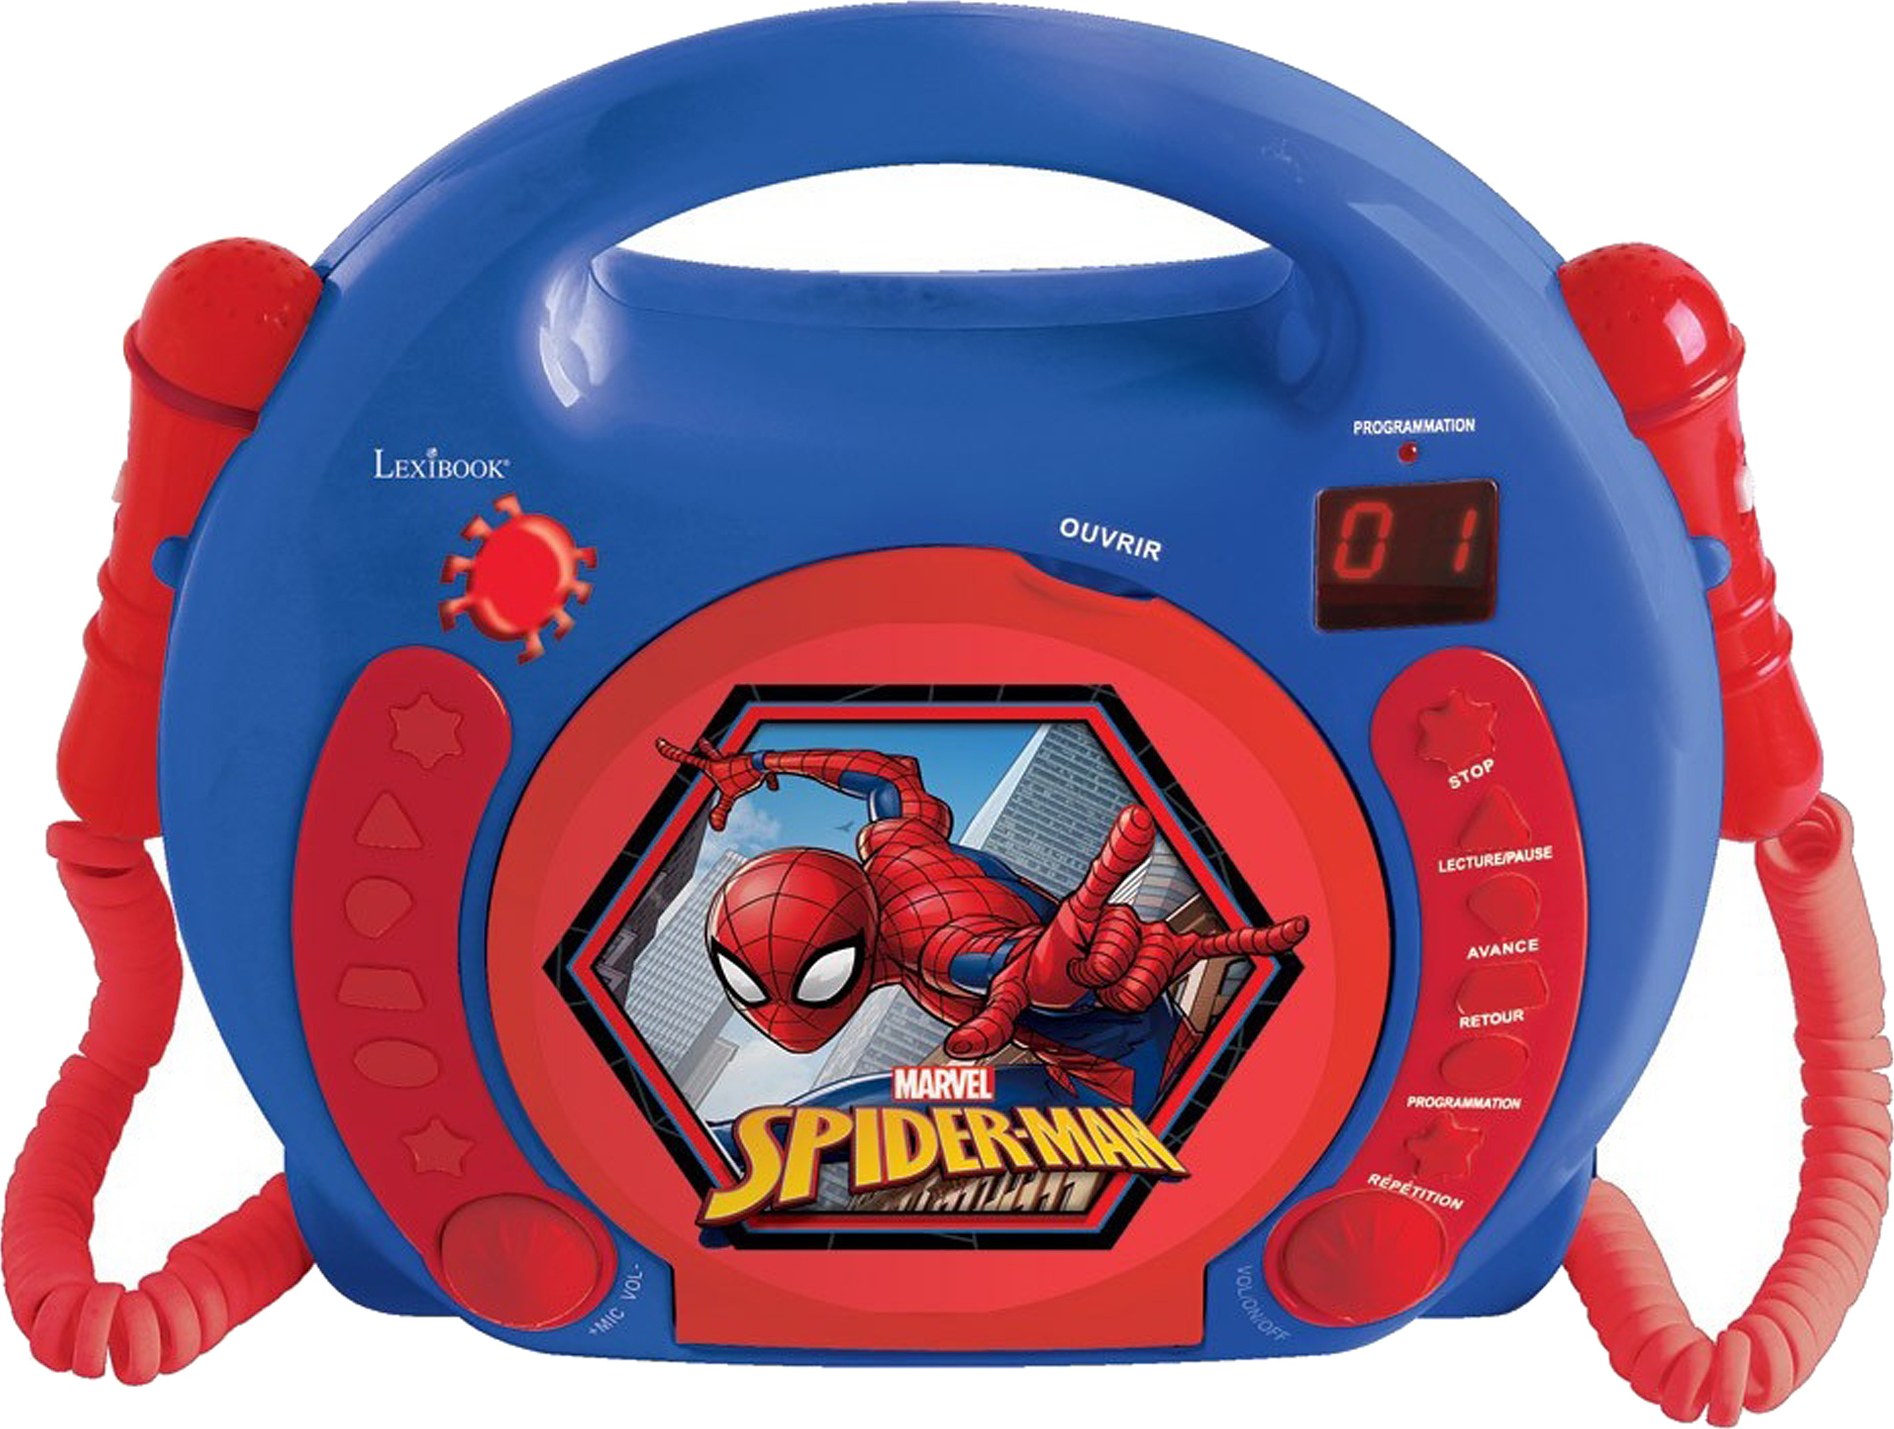 Přenosný CD přehrávač Spider-Man se 2 mikrofony